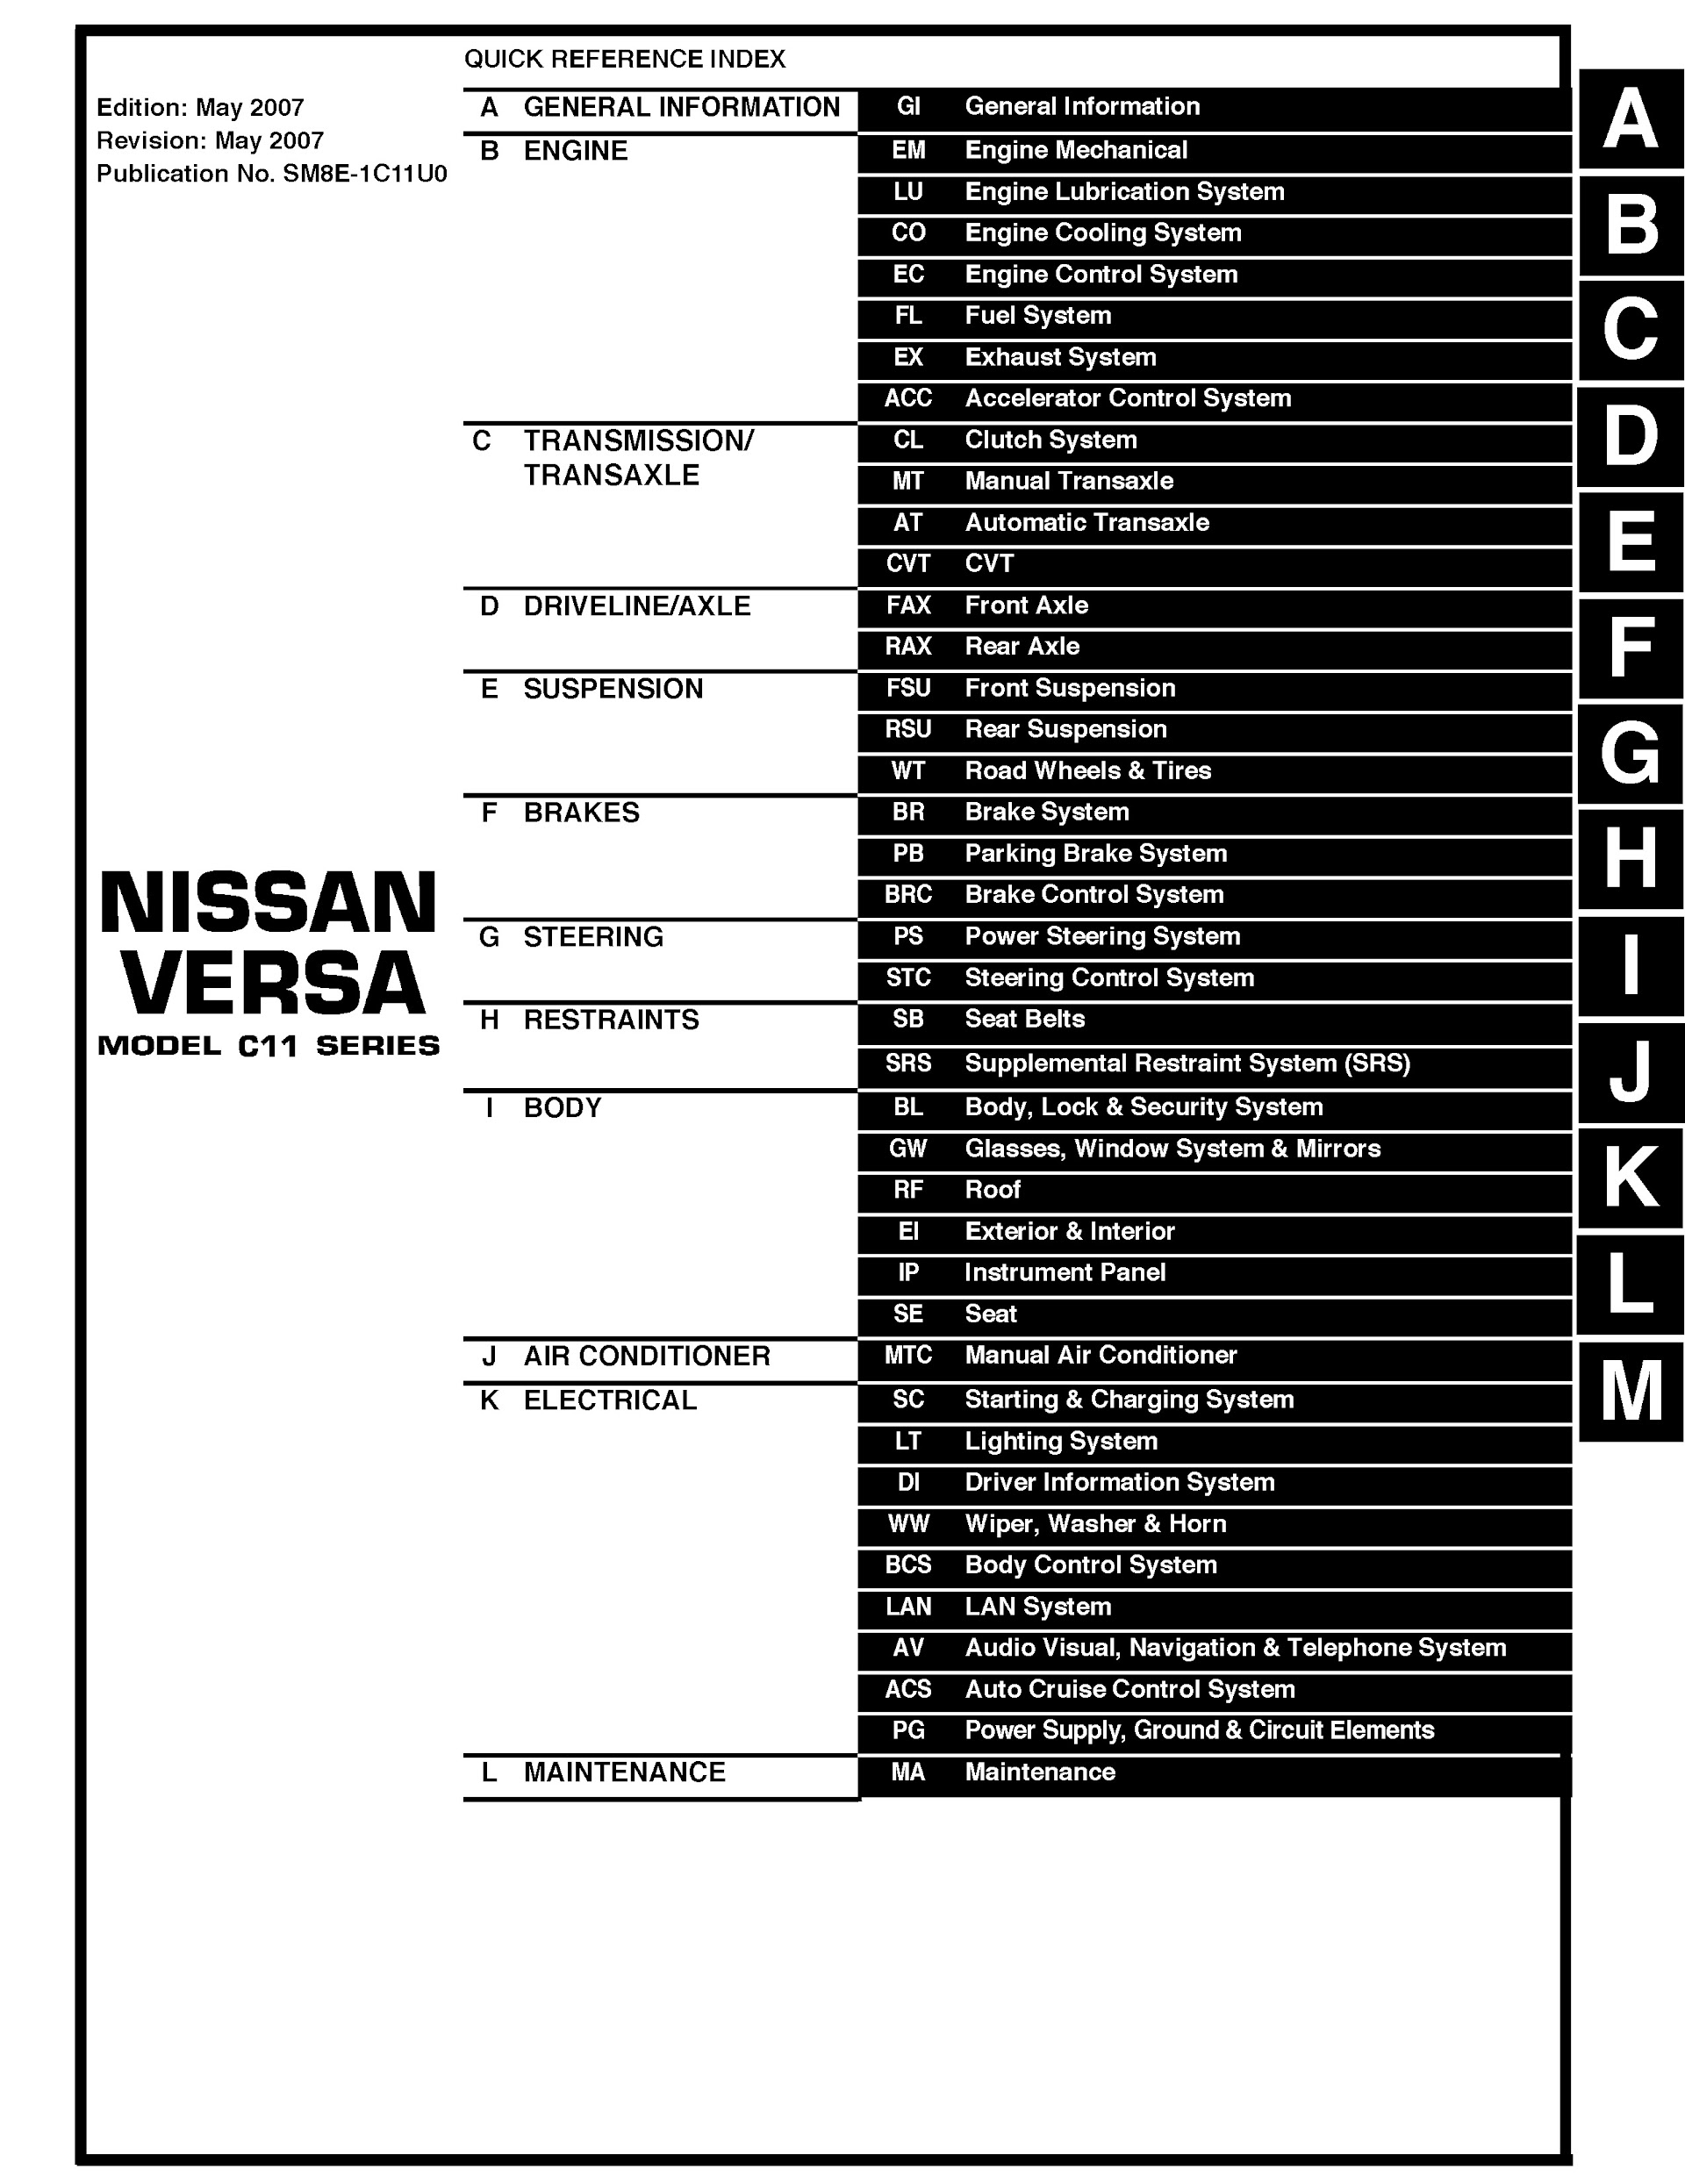 Table of Contents 2008 Nissan Versa Repair Manual